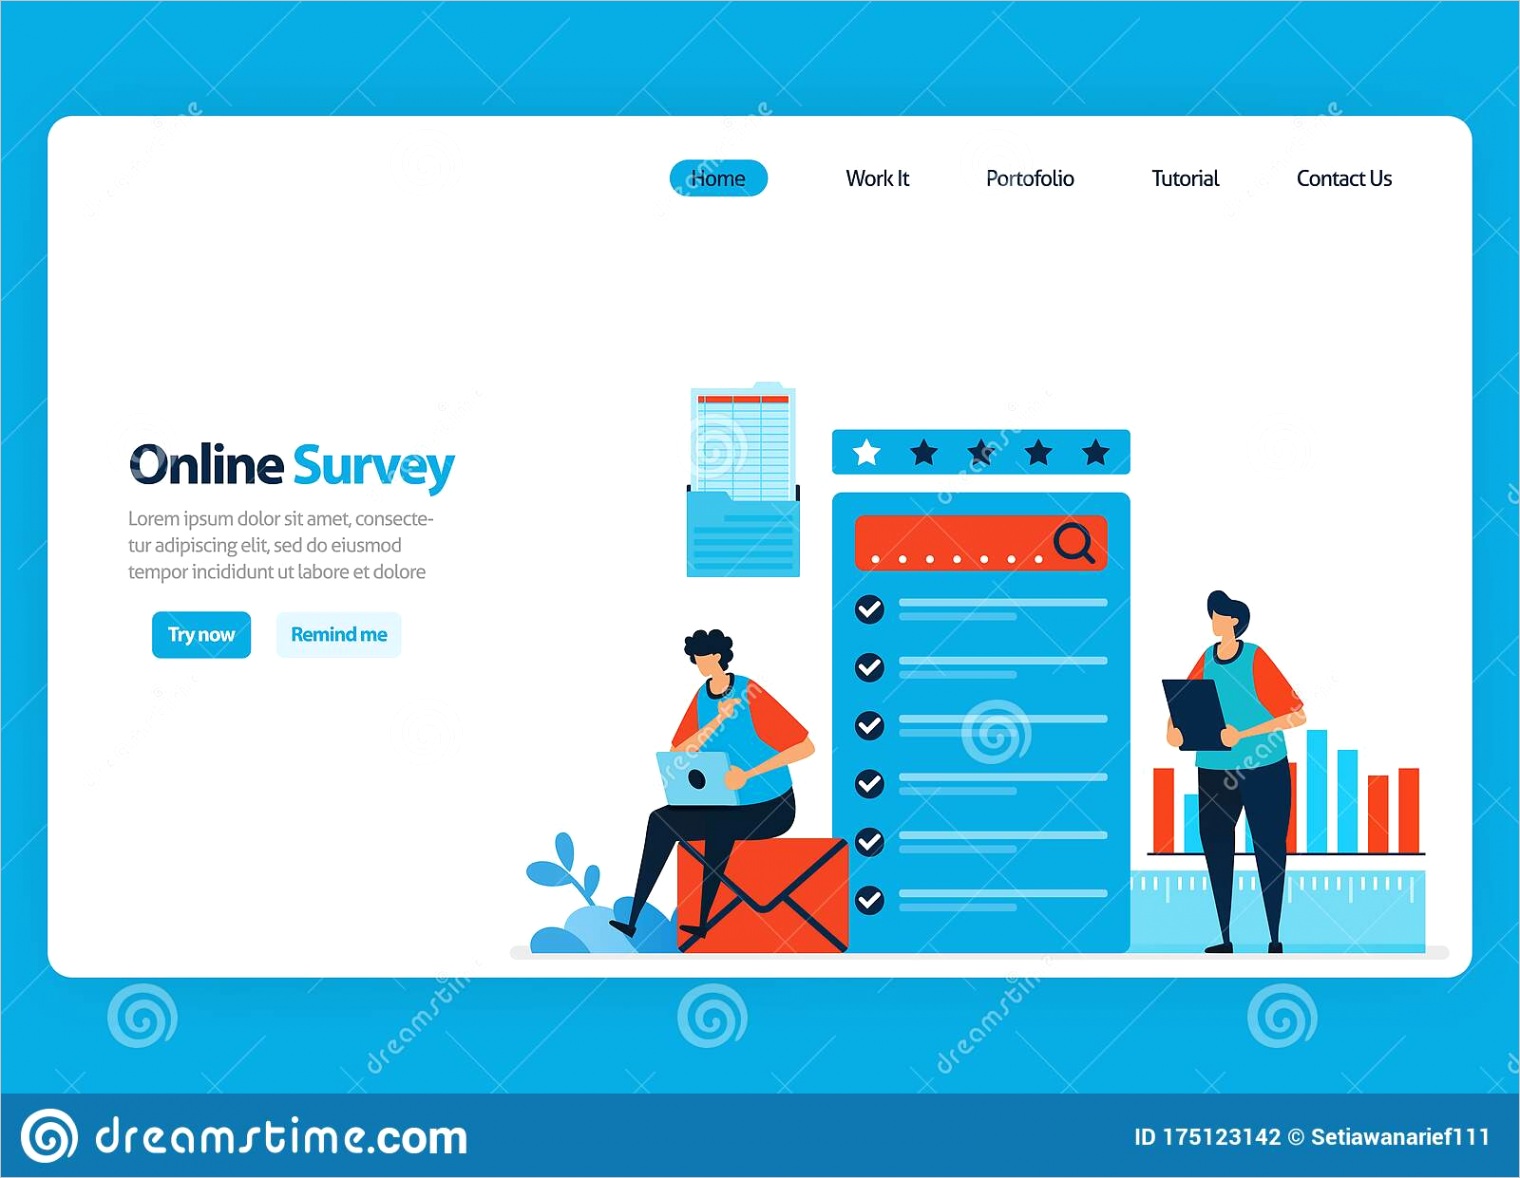 landing page design online survey exam filling out surveys internet validation software flat illustration document image